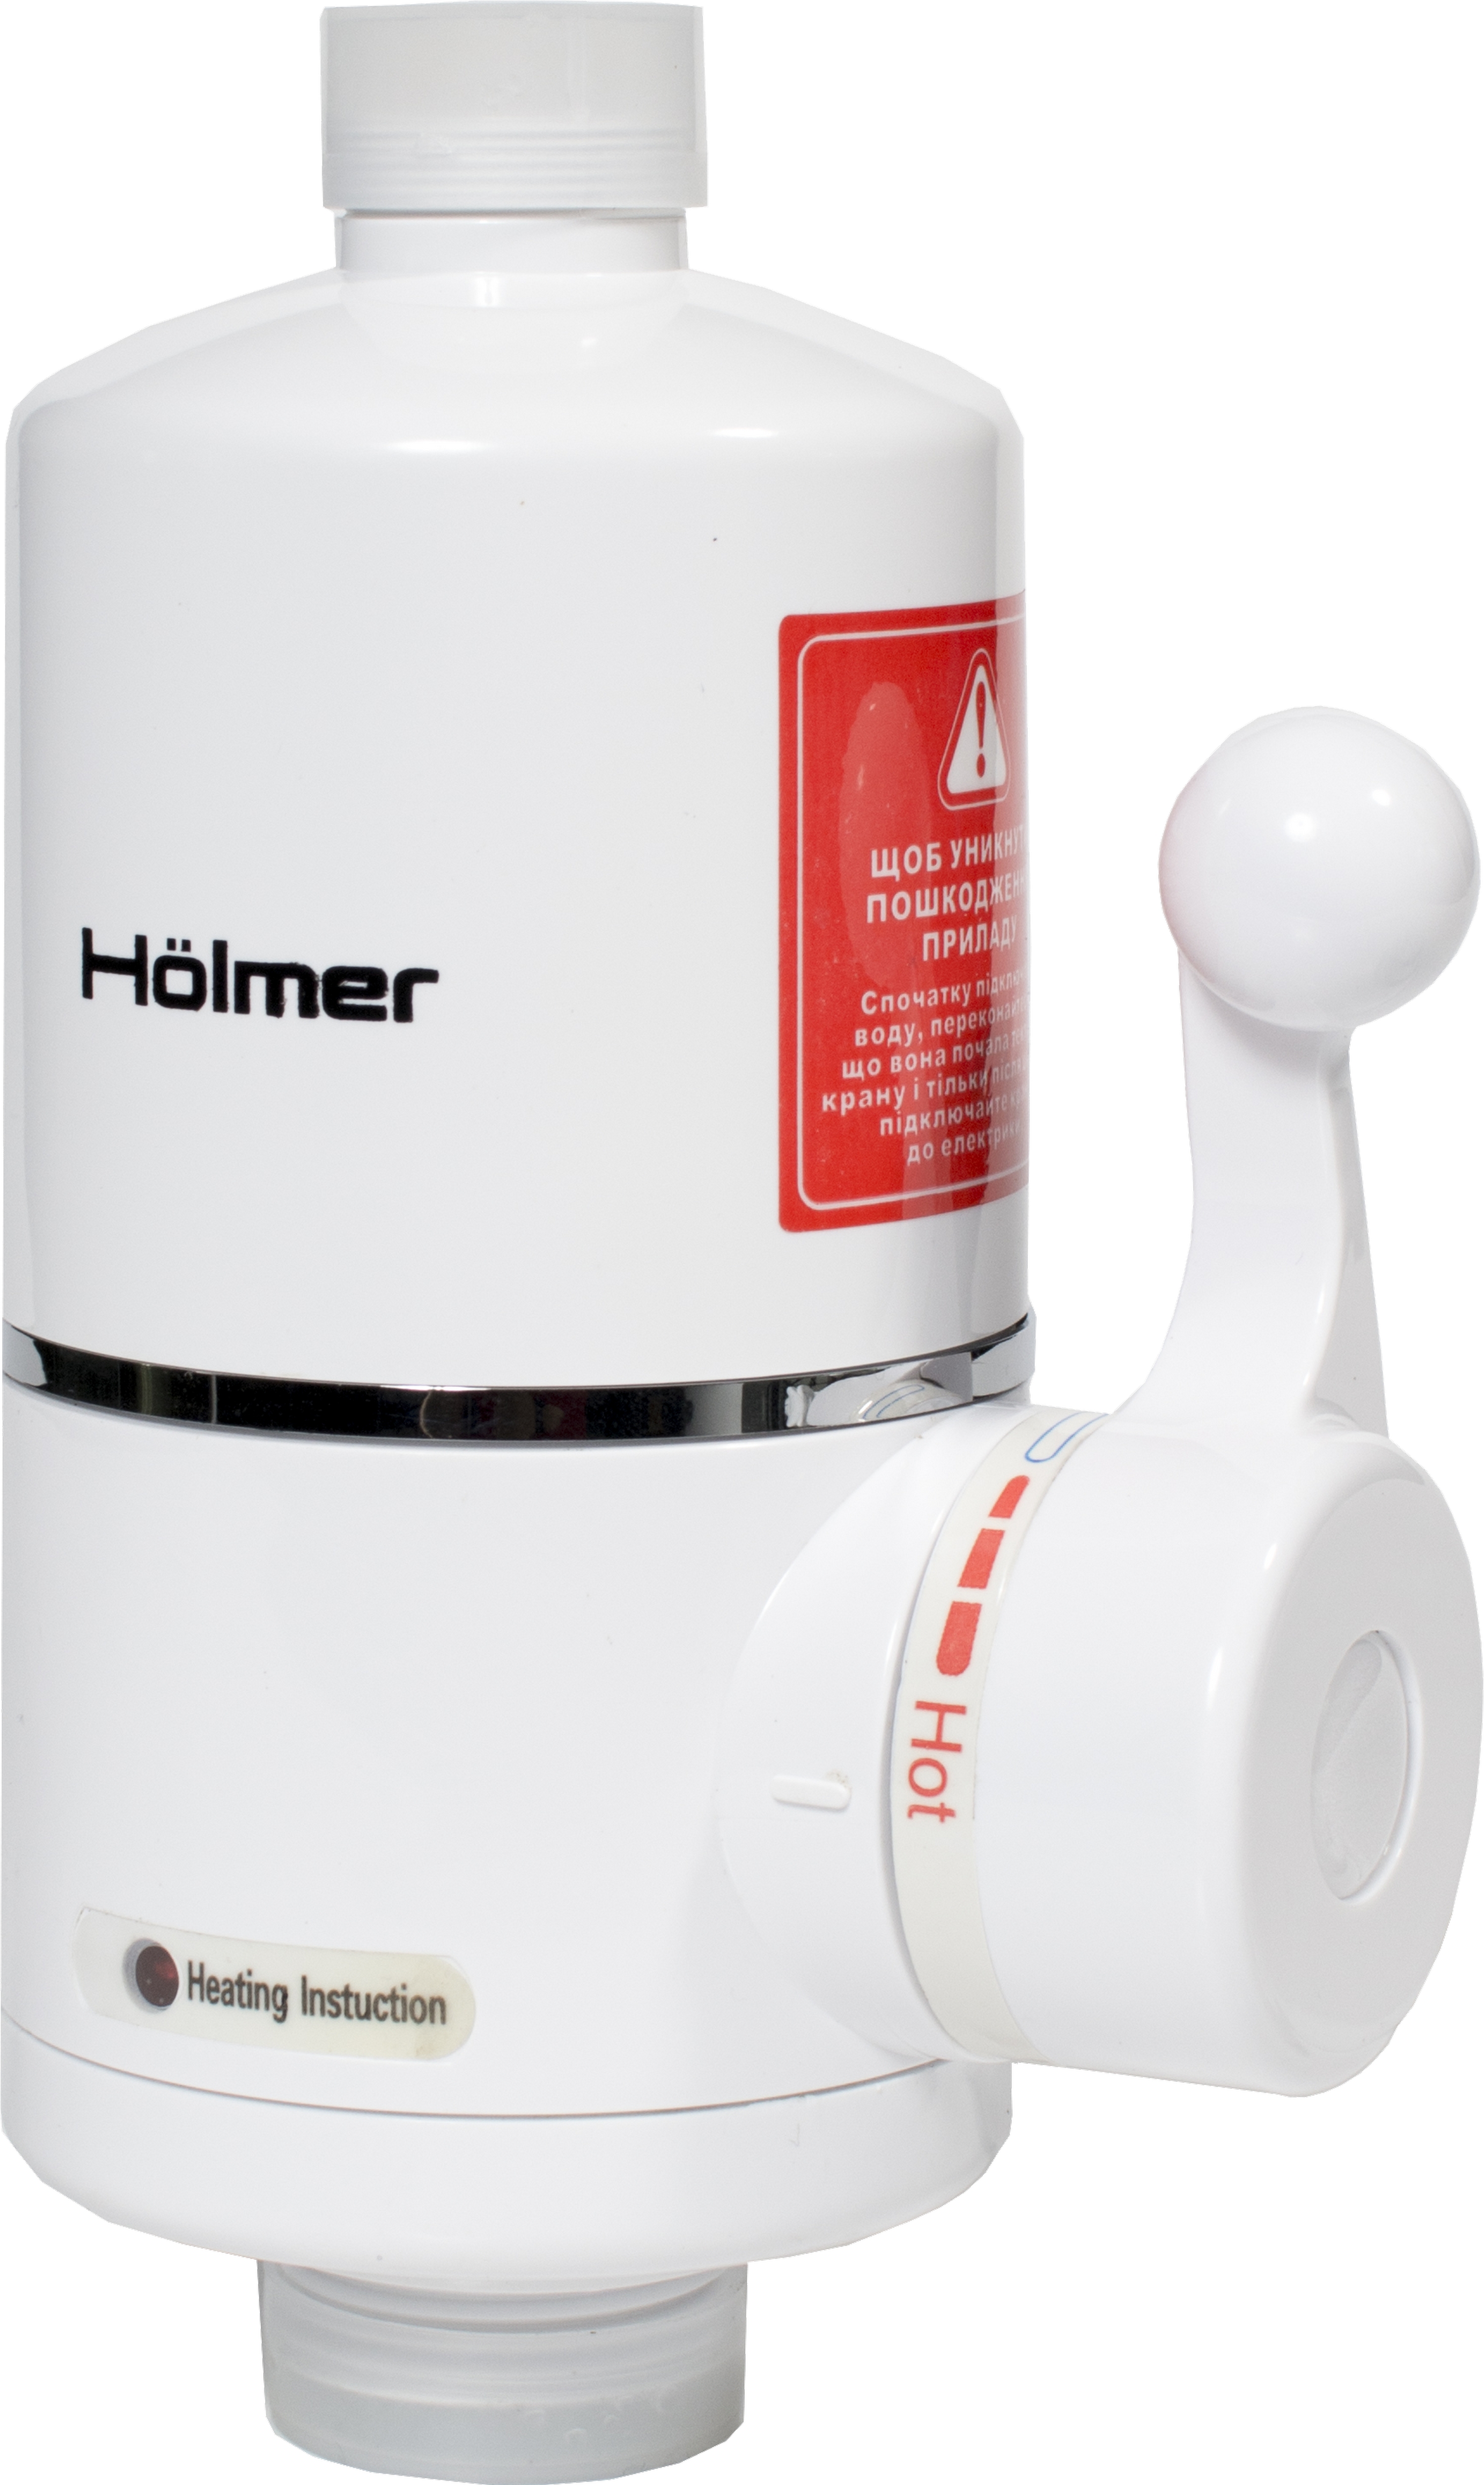 Holmer HHW-103SH